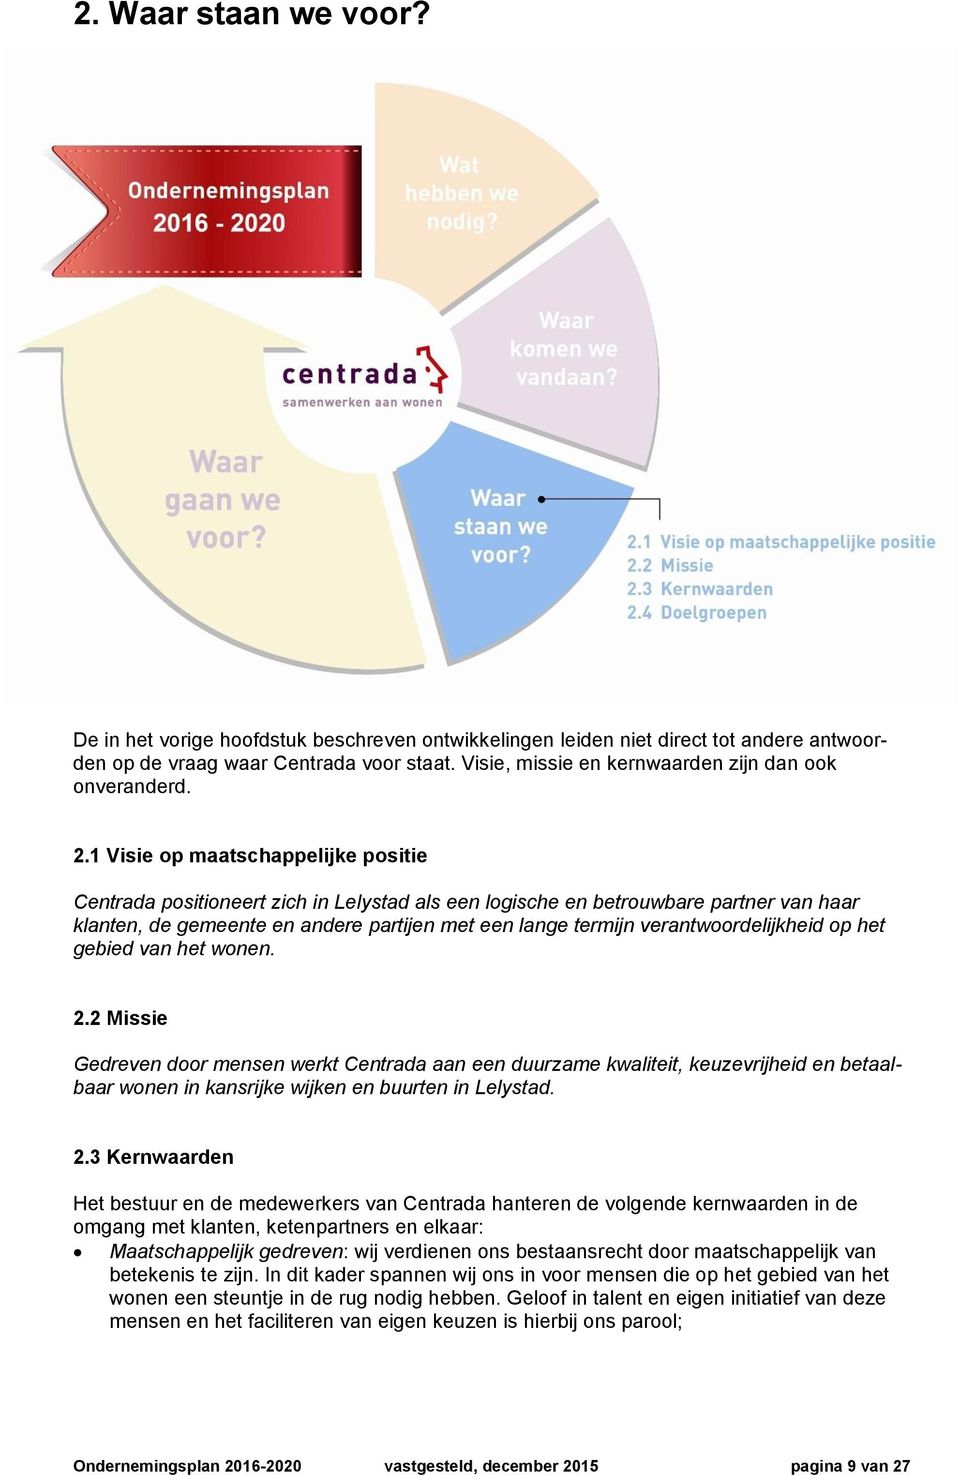 1 Visie op maatschappelijke positie Centrada positioneert zich in Lelystad als een logische en betrouwbare partner van haar klanten, de gemeente en andere partijen met een lange termijn